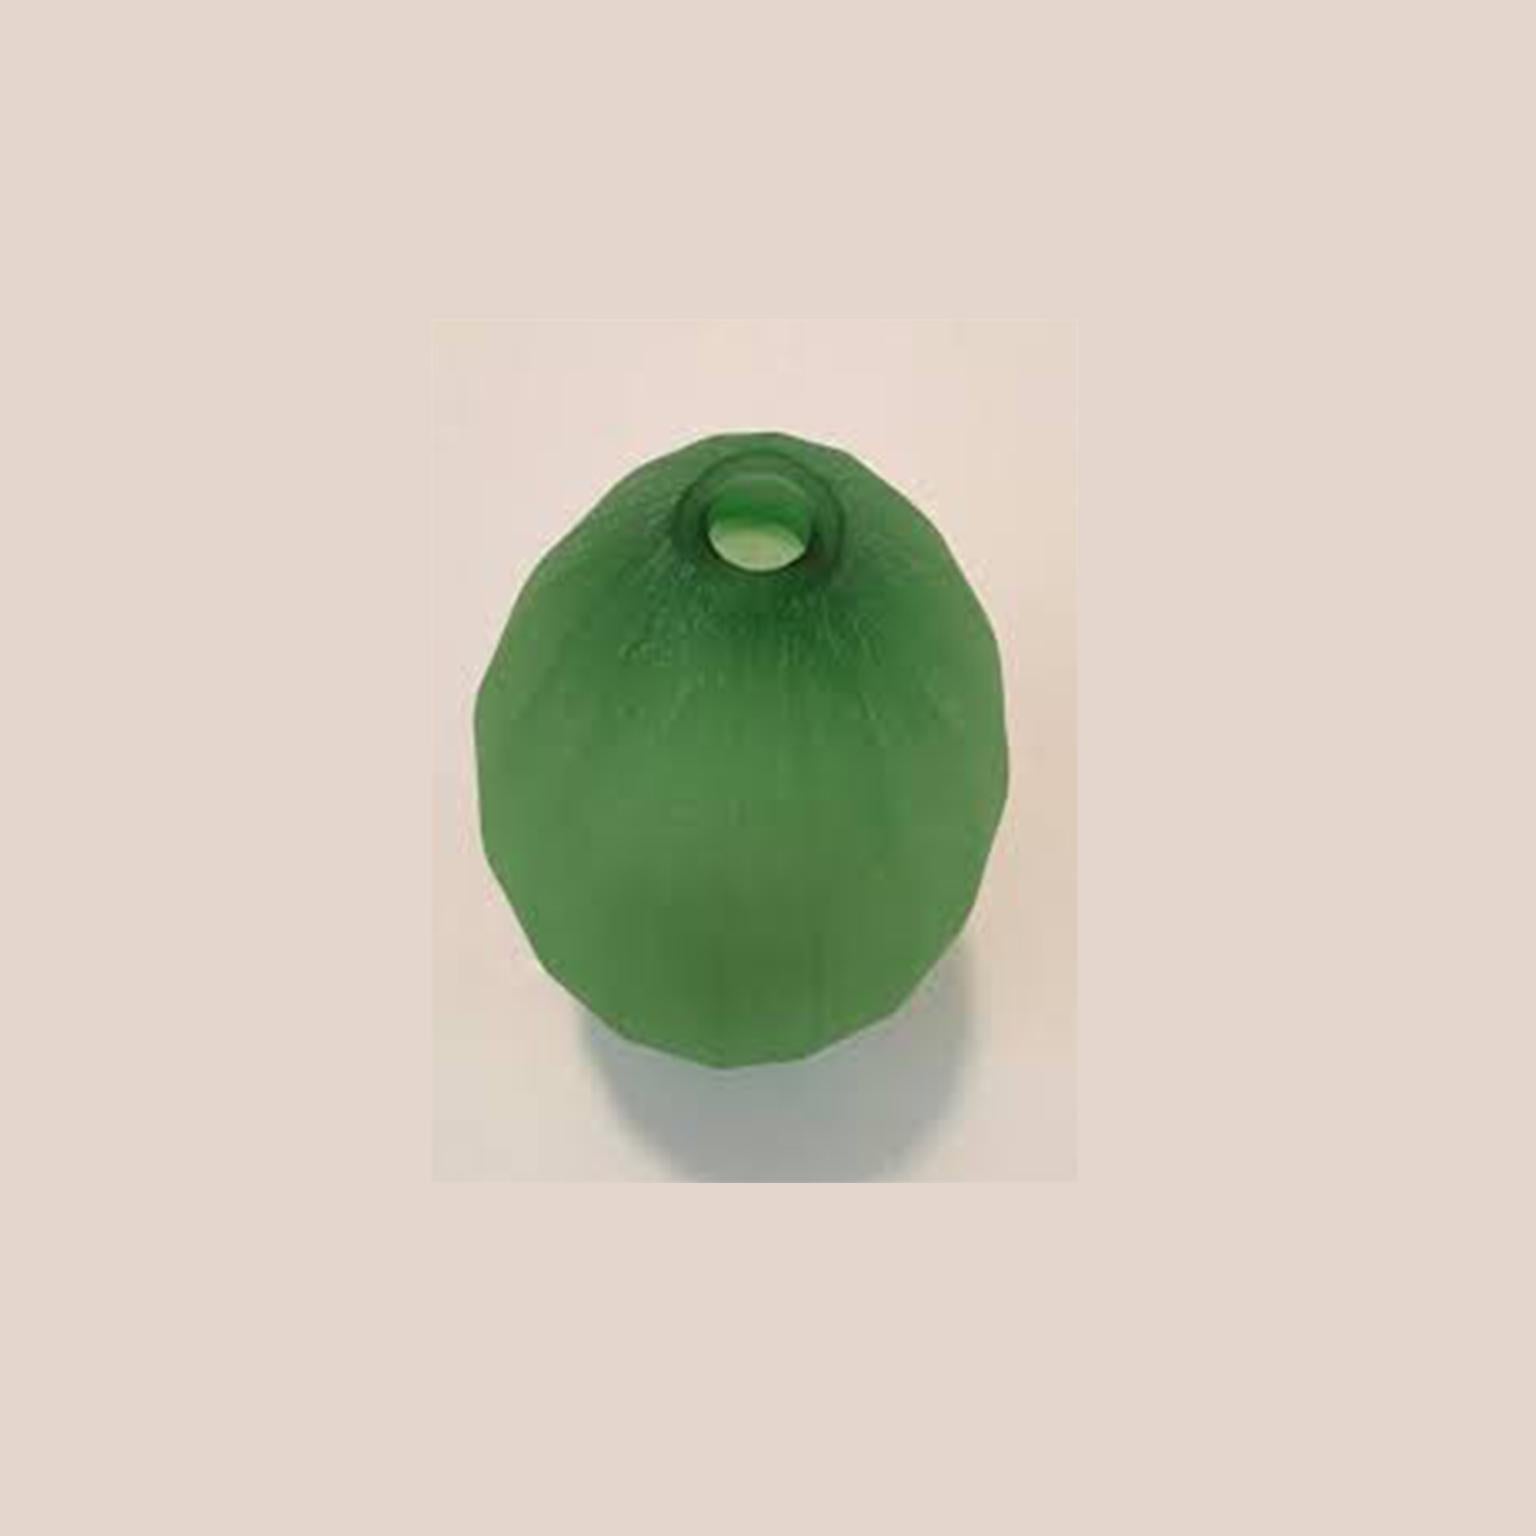 Vase conçu par Laura de Santillana dans l'édition pour Arcade:: 2001. Ce vase fait partie d'une série de vases inspirés de formes de fruits et de plantes tropicales avec la même finition mate:: gravée à la main : 
Papaia:: fabriqué en trois